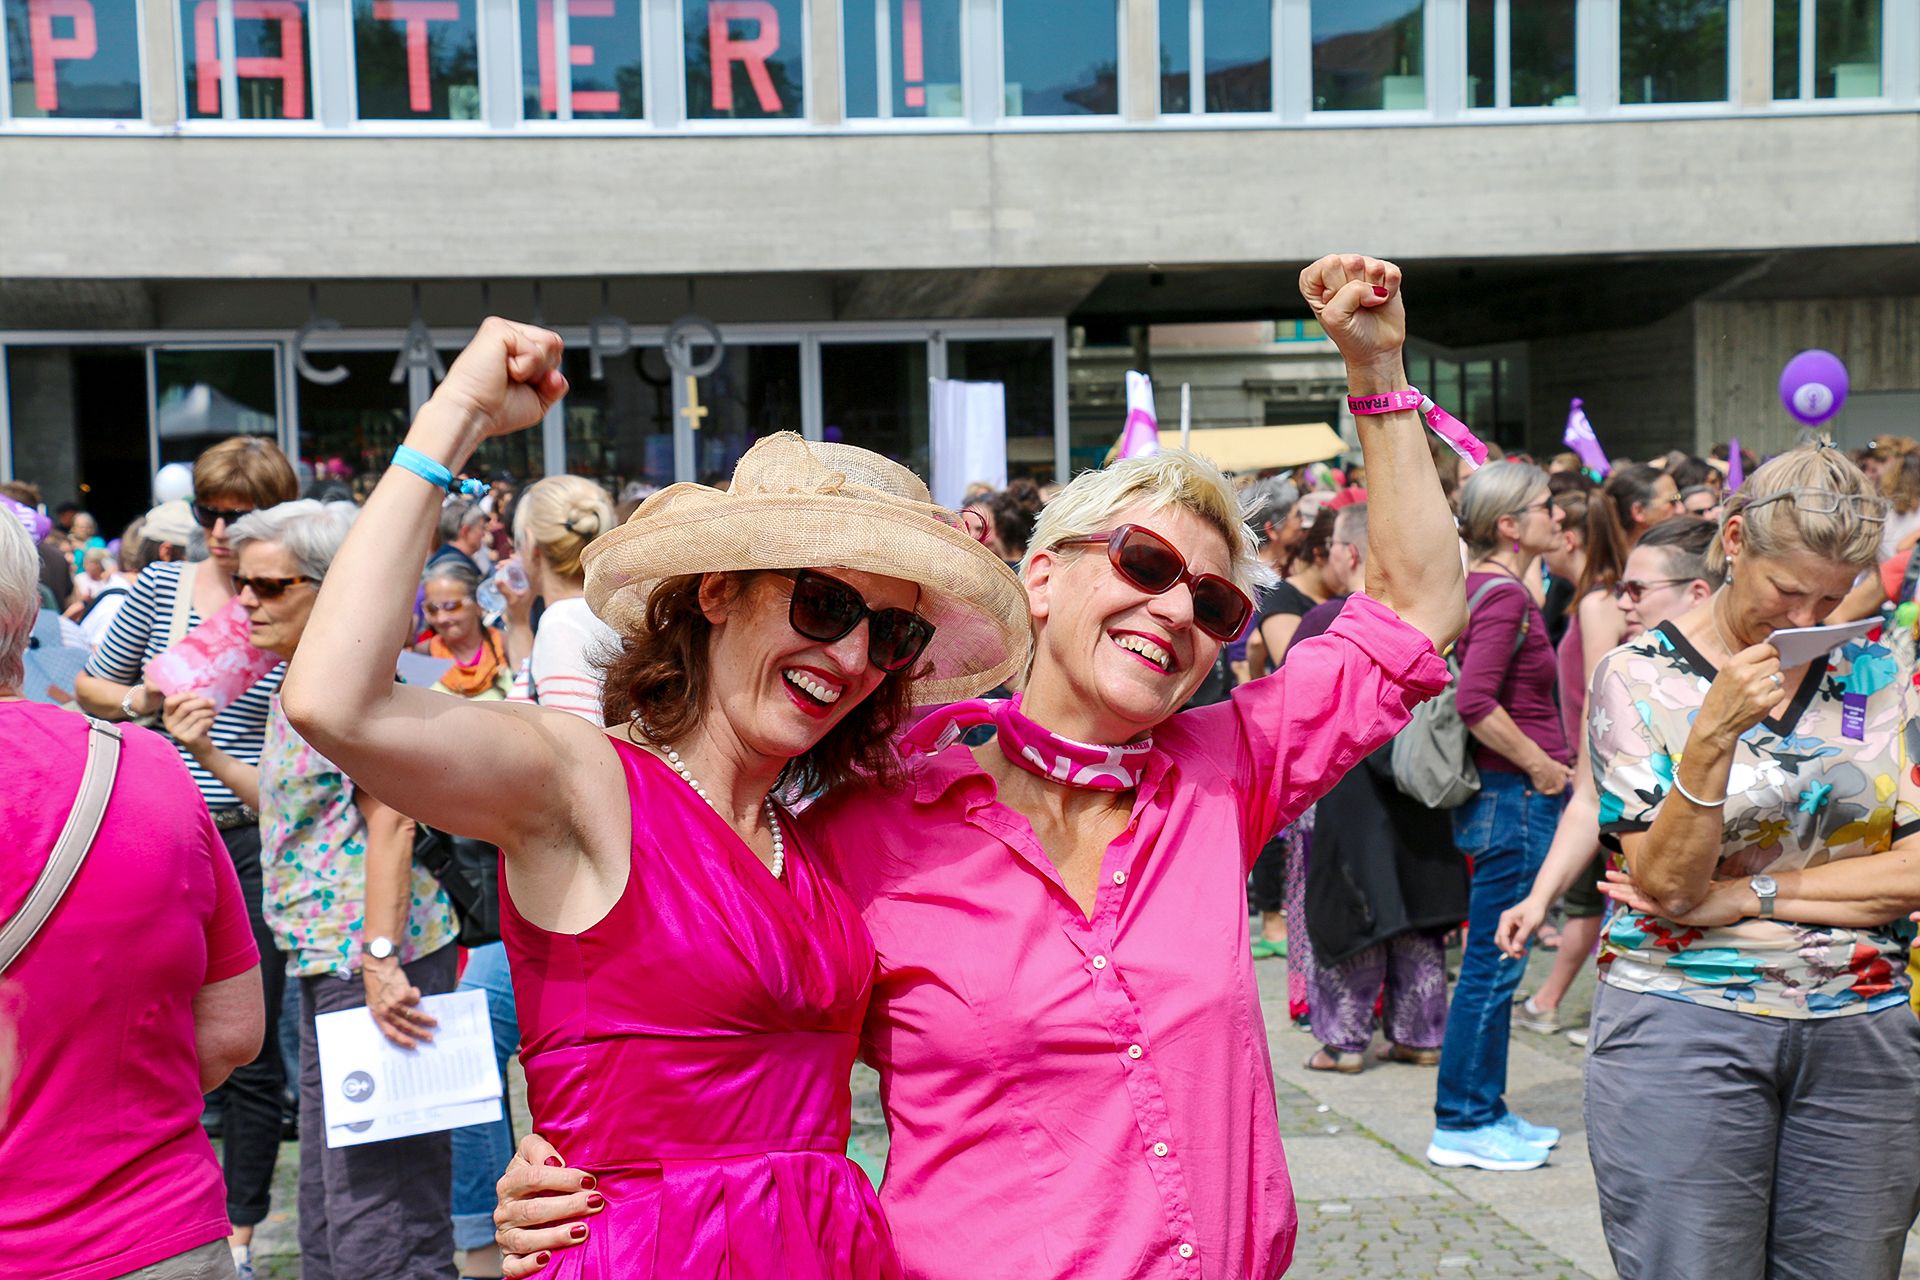 Frauenstreik Zürich